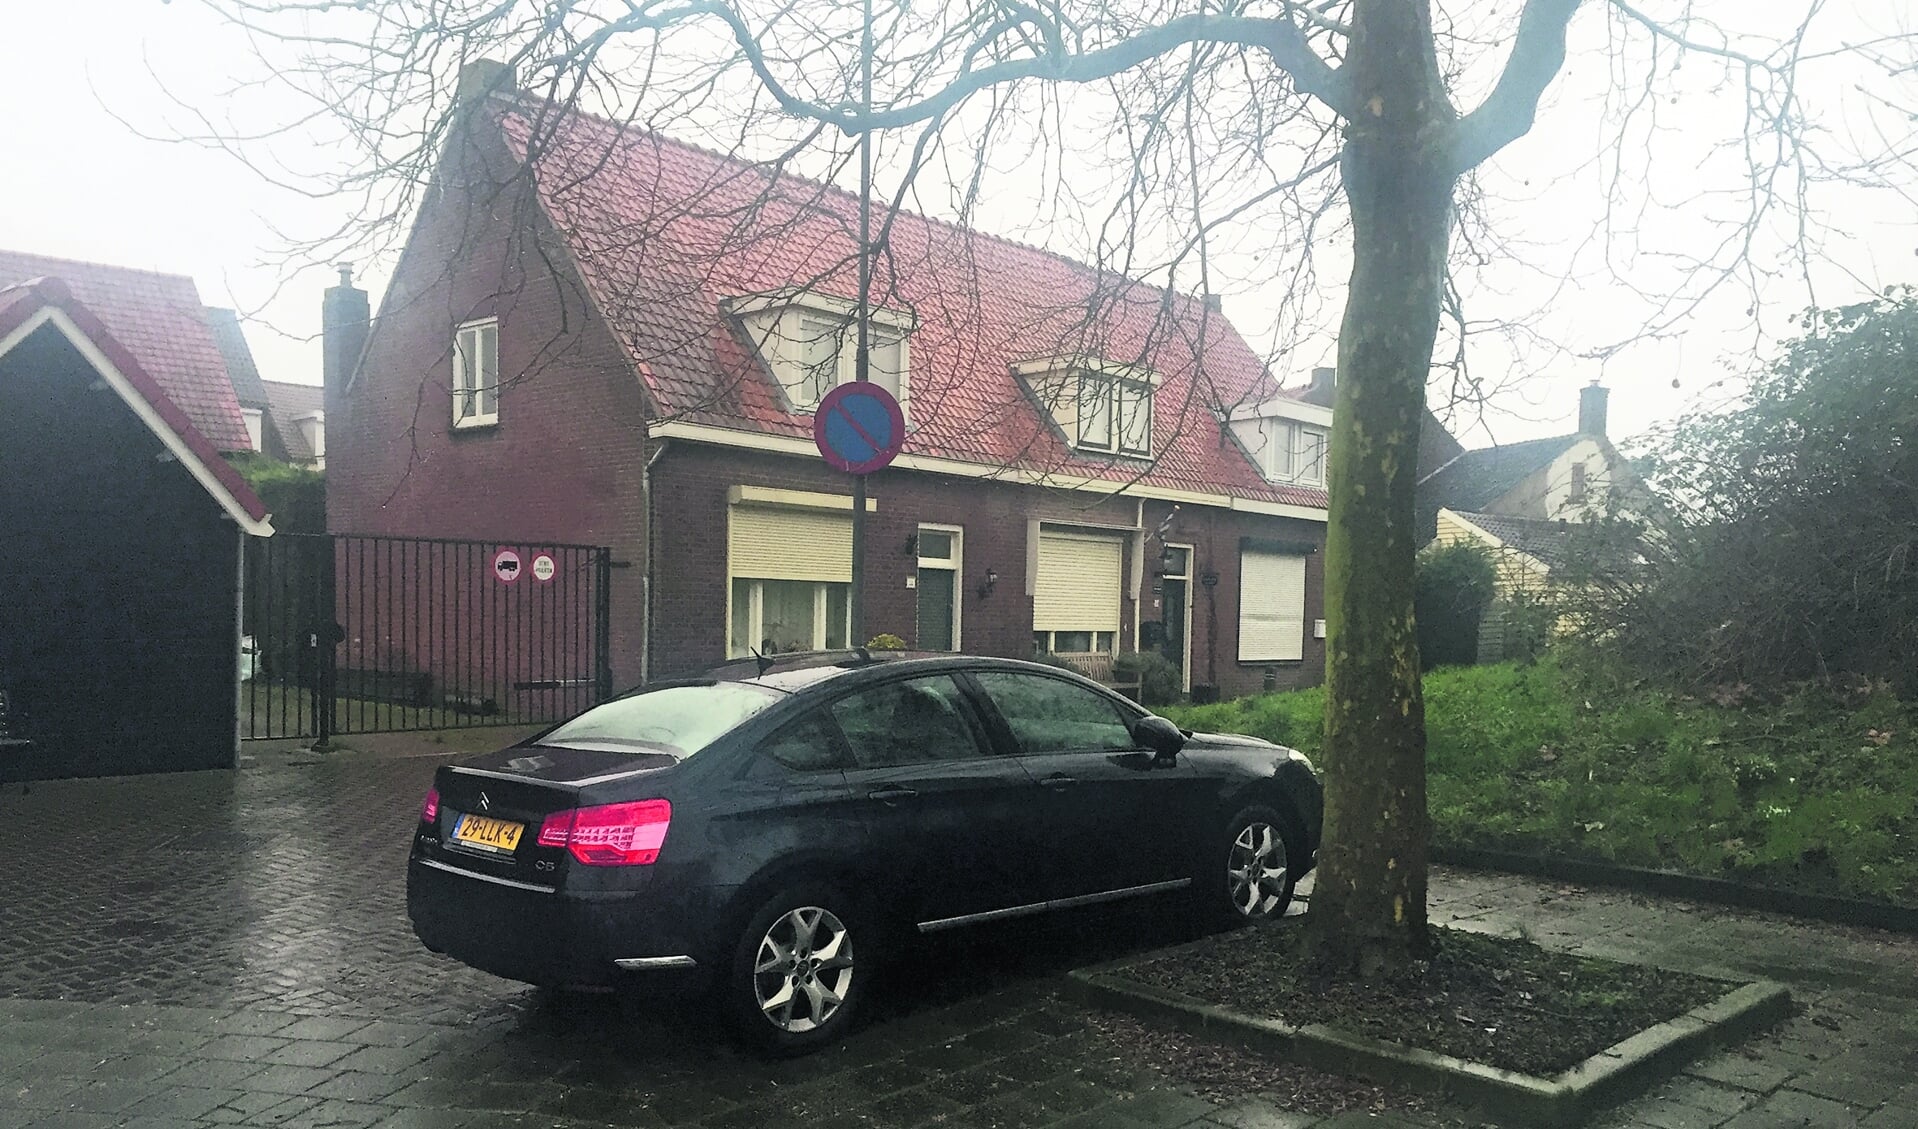 Wel of niet goed parkeren zoals hier in Cromvliet Tholen krijgt nauwelijks aandacht.